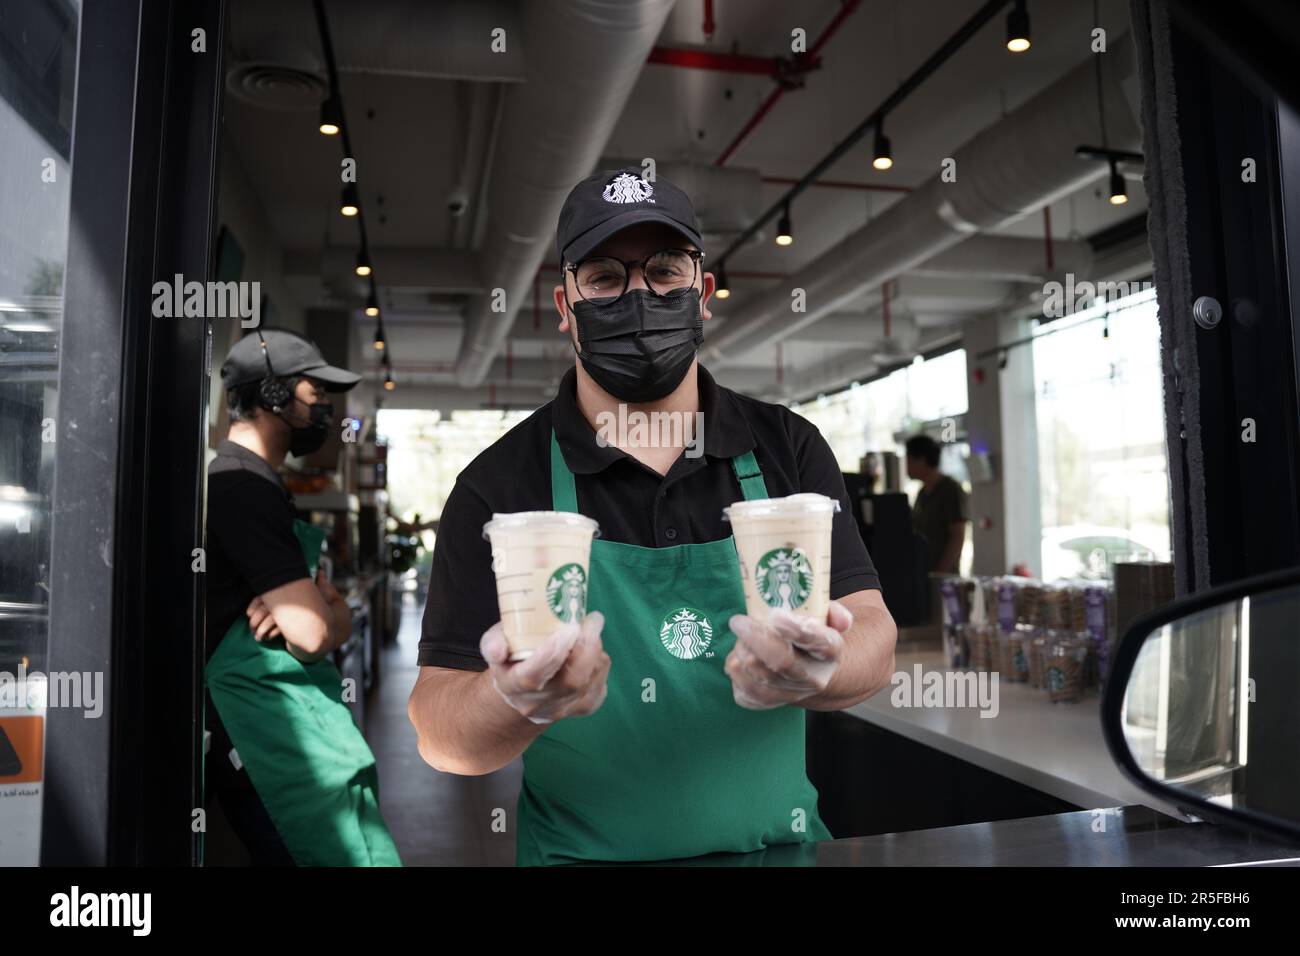 Starbucks Mitarbeiter geben Befehle mit fröhlichem Gesichtsausdruck und tragen Gesichtsmasken am Drive-in. Eisgekühlter weißer Mokka-Kaffee. Stockfoto